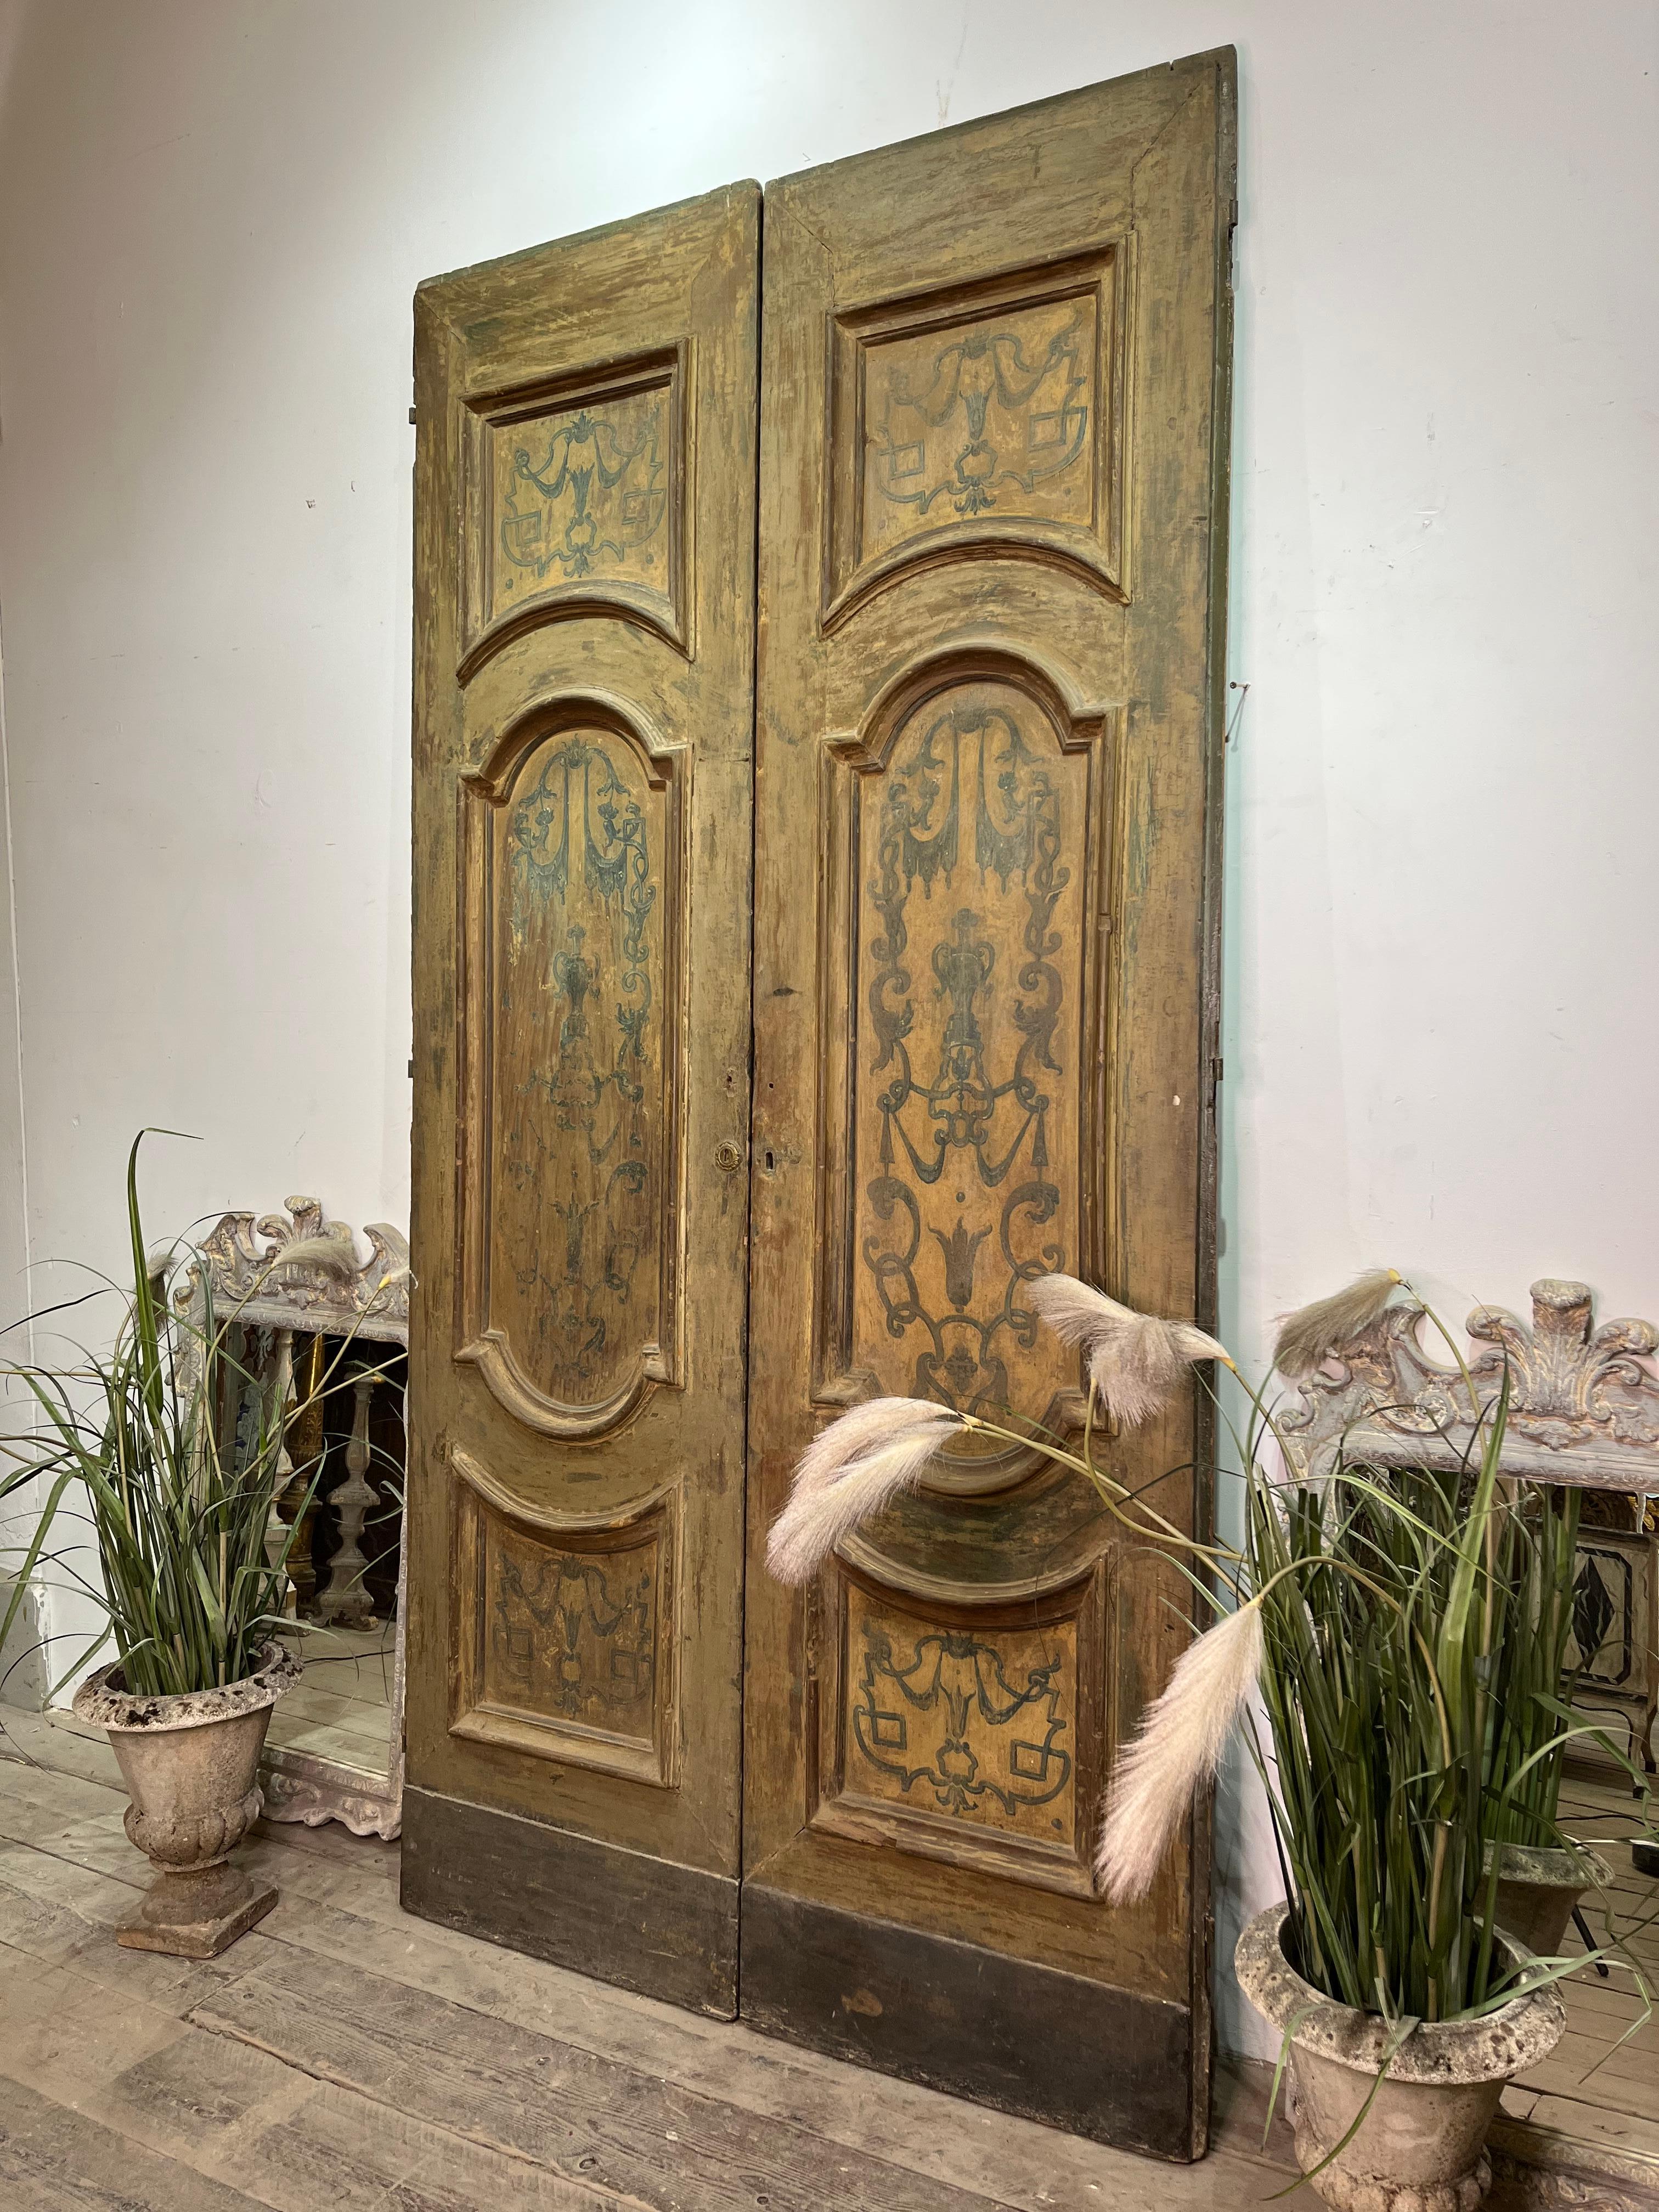 Majestätisches und großformatiges erstes Portal aus dem 18. Jahrhundert aus Neapel, Italien.
Schöne erste Patina mit Dekorationen in jedem Rahmen.
Originale Hardware. Die Rückseite ist einfacher.
Er kann in seiner Funktion als Türöffnung eingesetzt